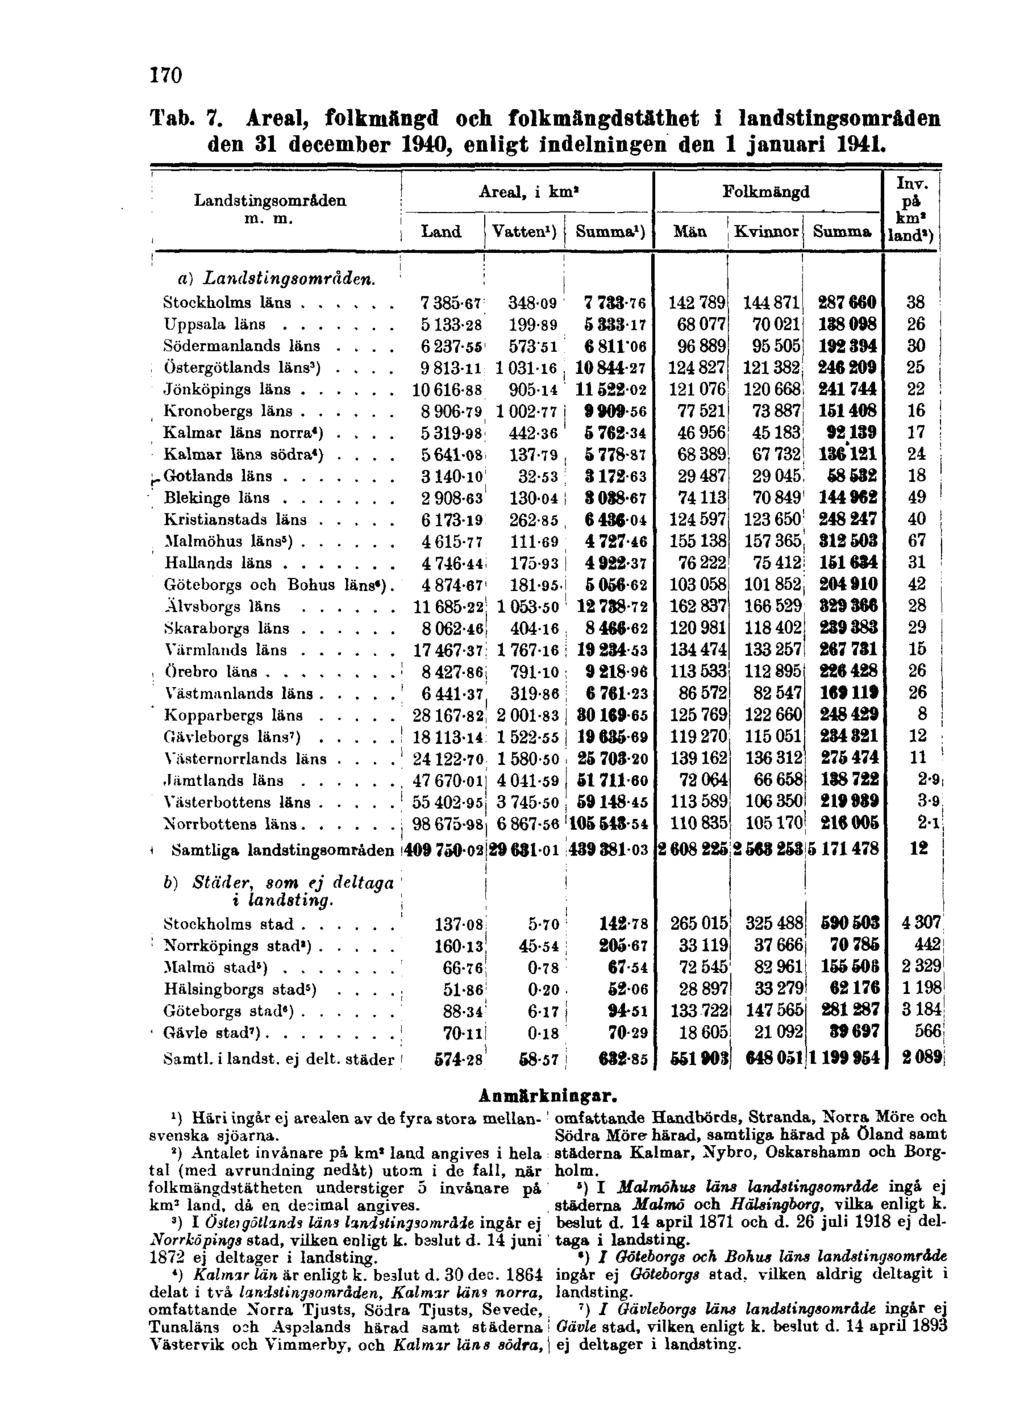 170 Tab. 7. Areal, folkmängd och folkmängdstäthet i landstingsområden den 31 december 1940, enligt indelningen den 1 januari 1941. Anmärkningar.